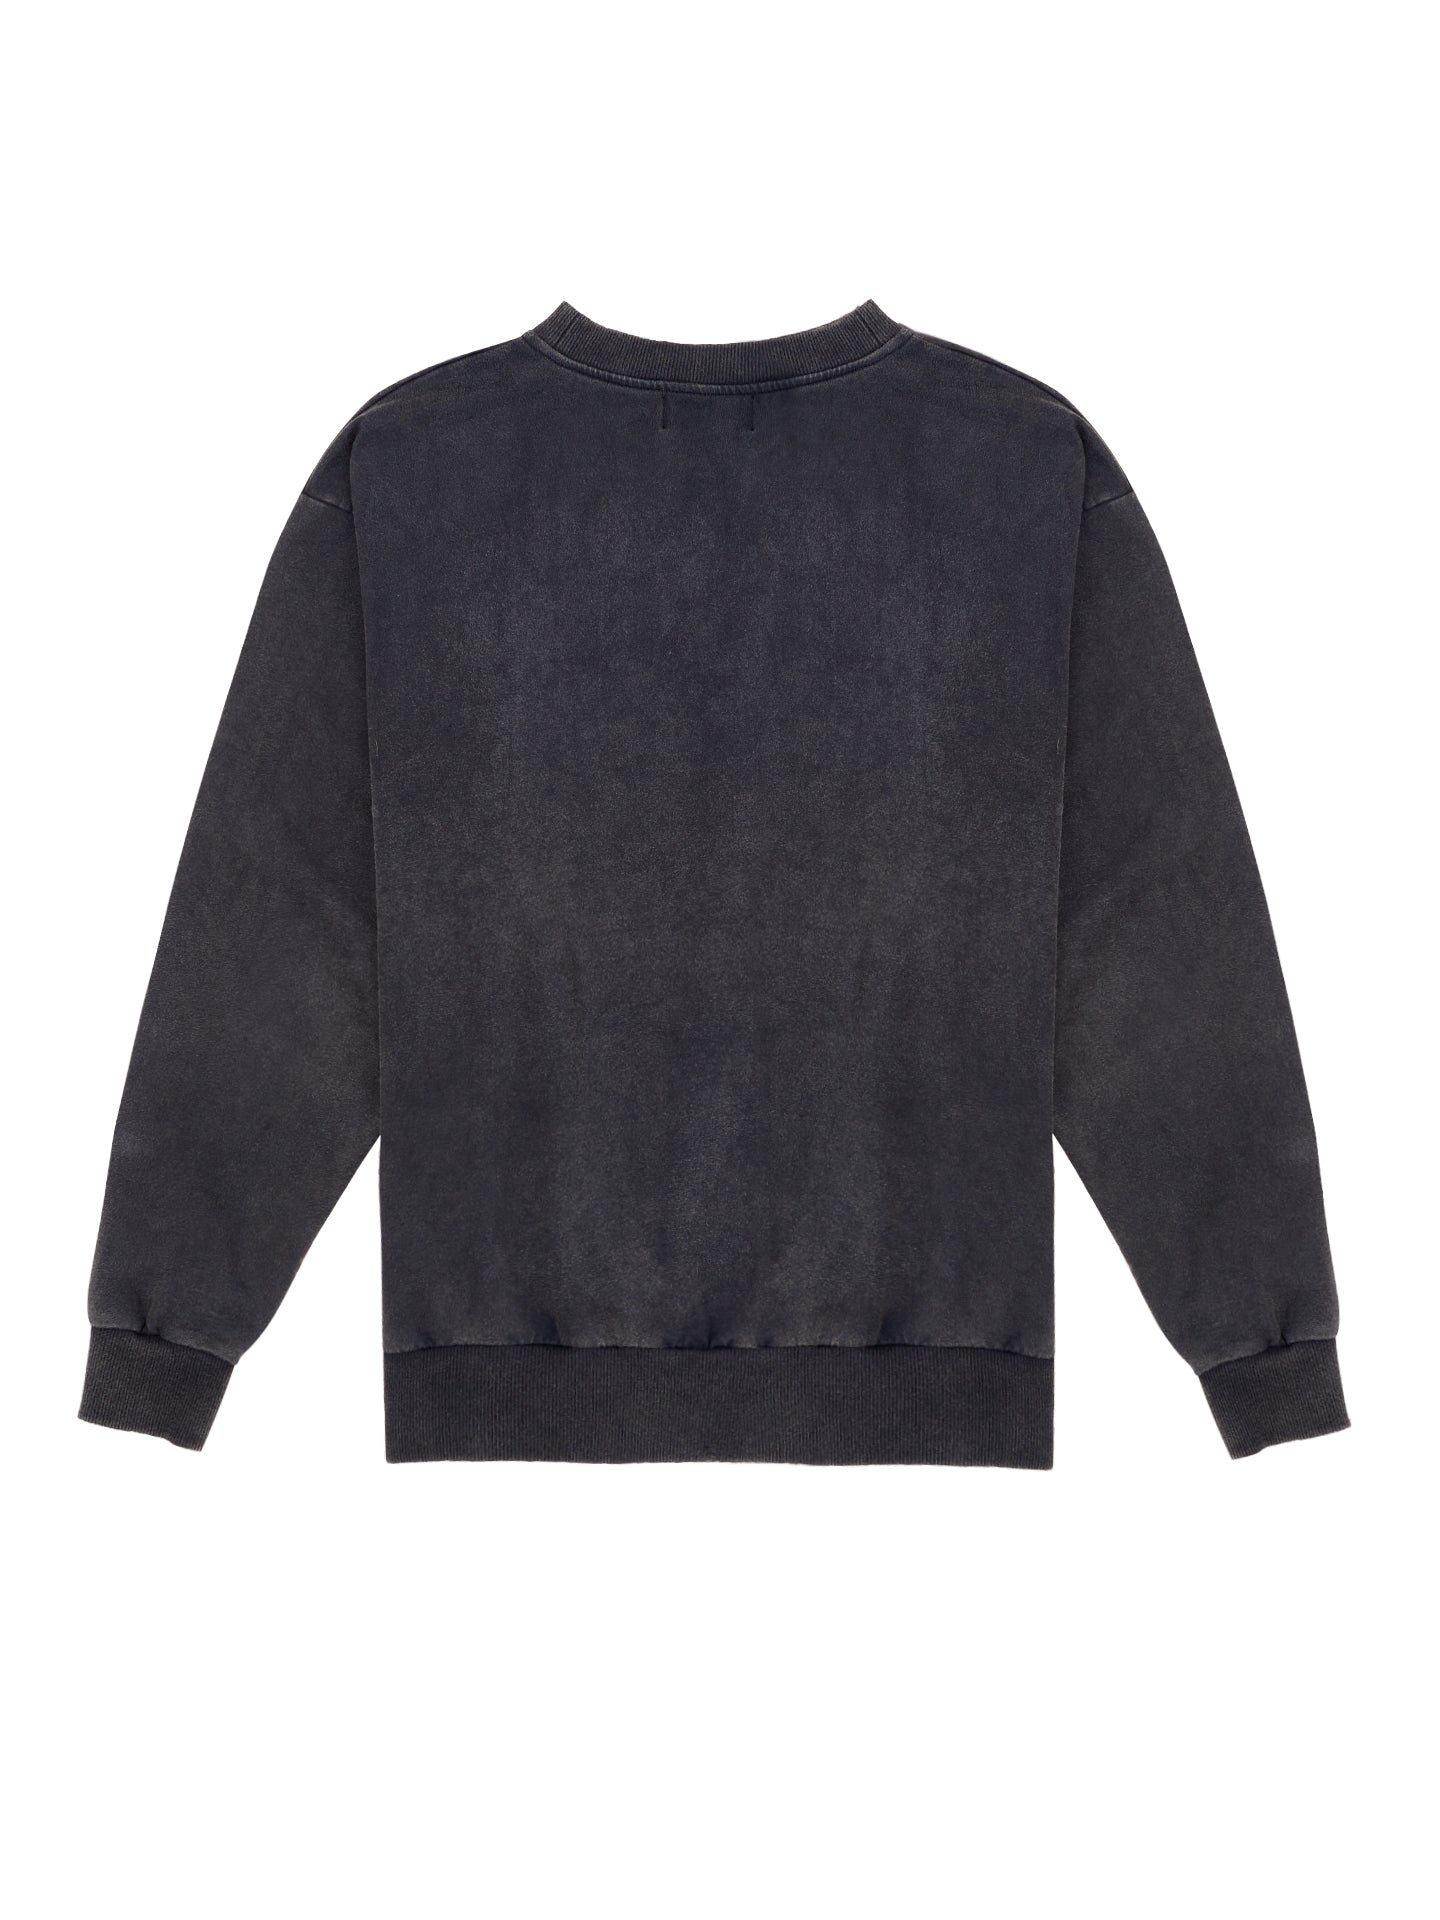 Leokopf Sweater - Vintage Schwarz